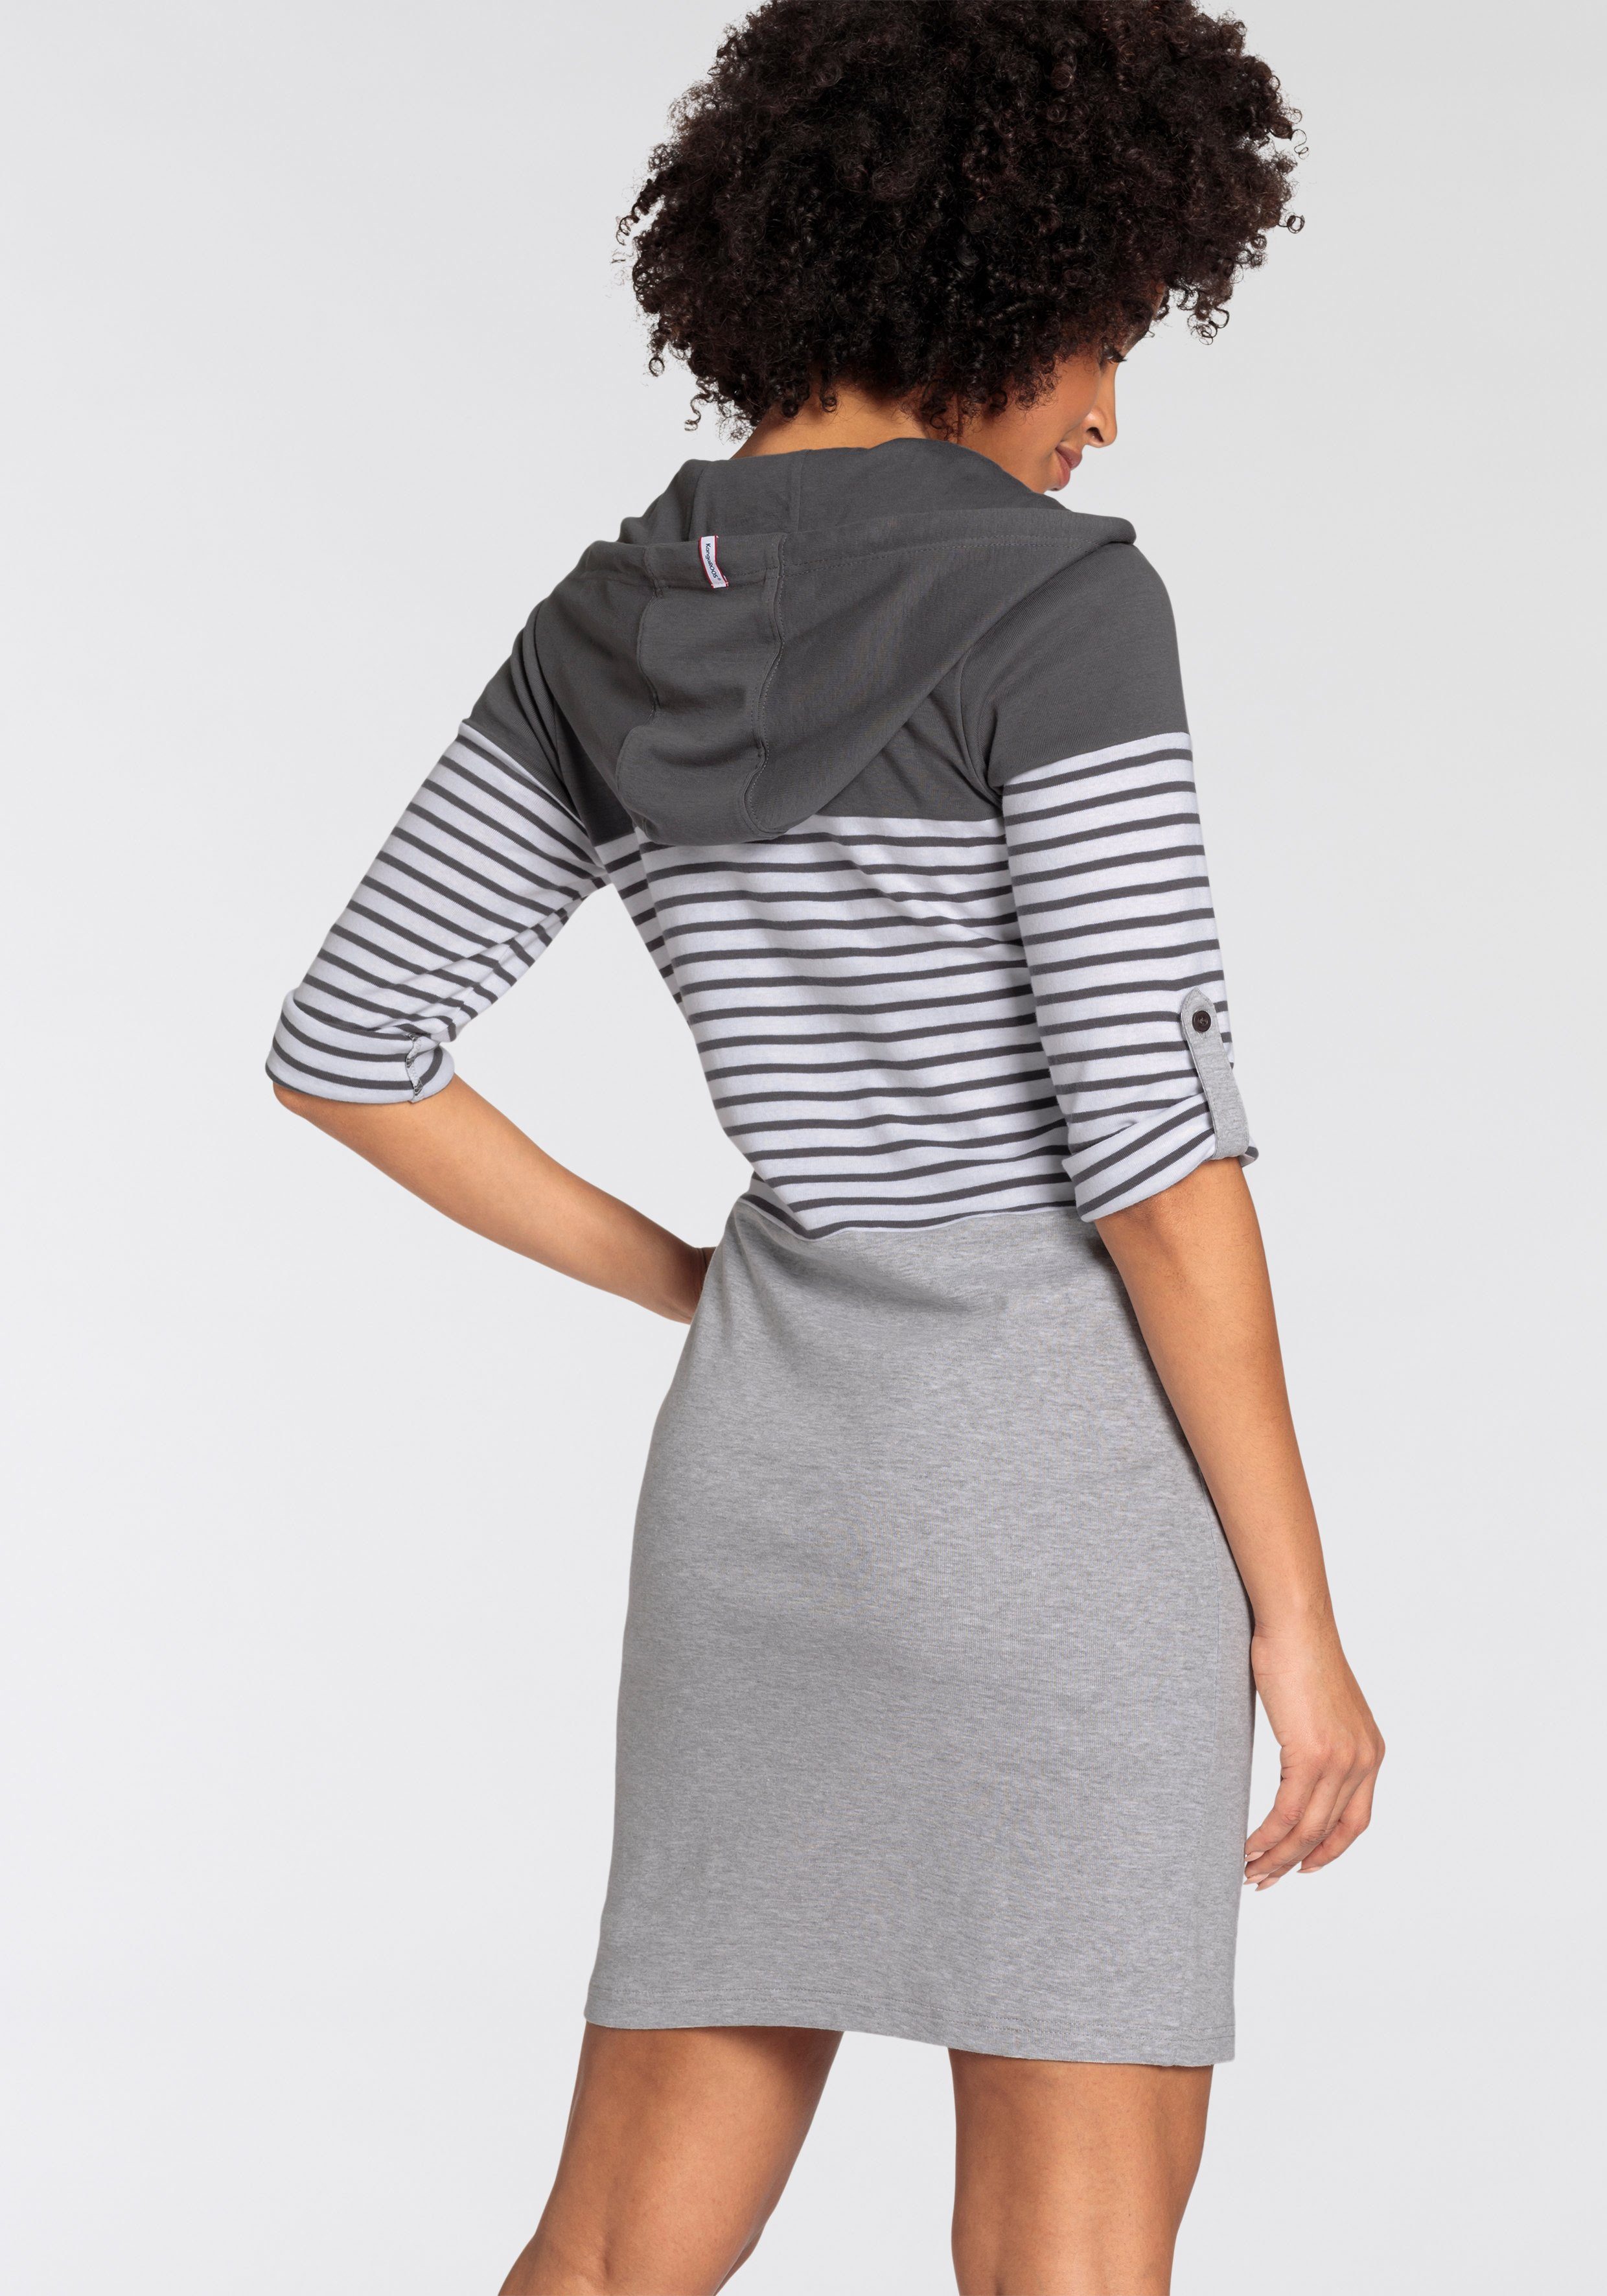 Jerseykleid in KOLLEKTION -NEUE Colorblocking mit Kapuze Design KangaROOS